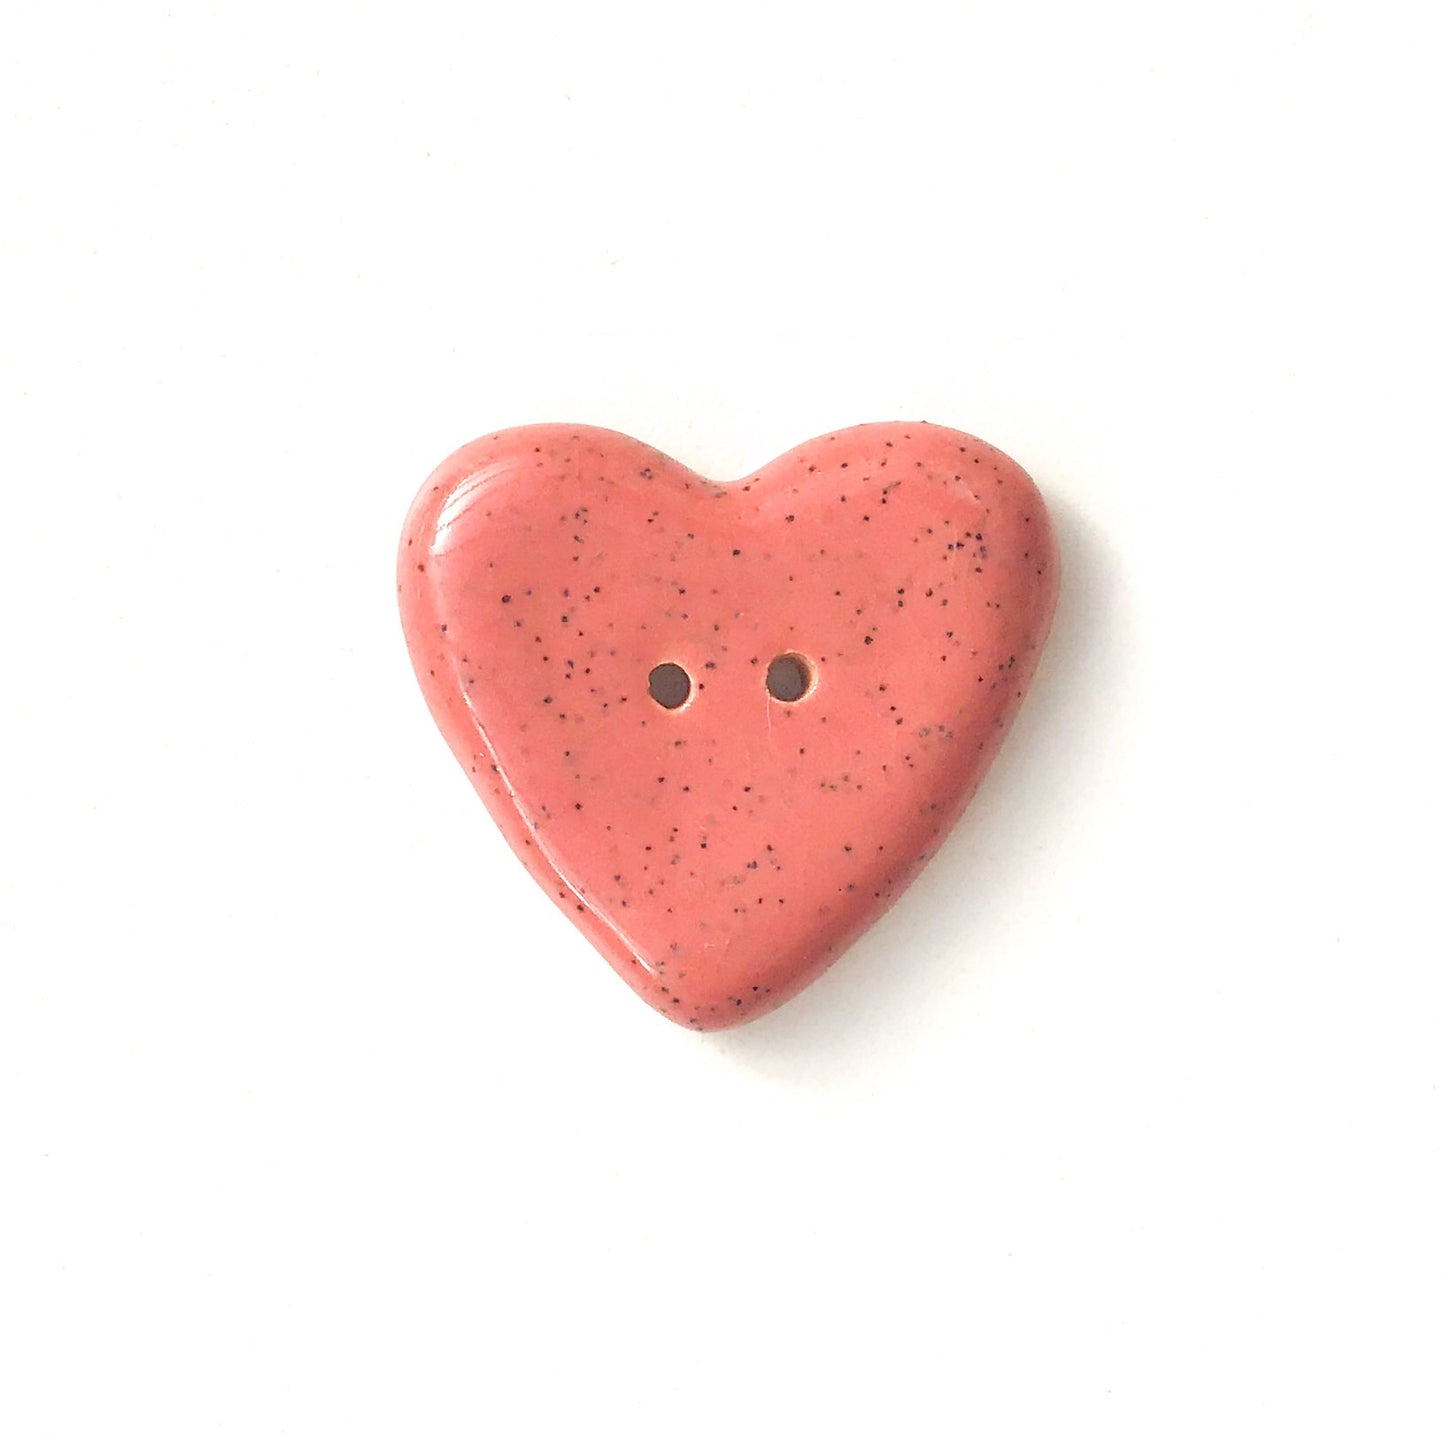 Decorative Pink Heart Buttons - Ceramic Heart Buttons